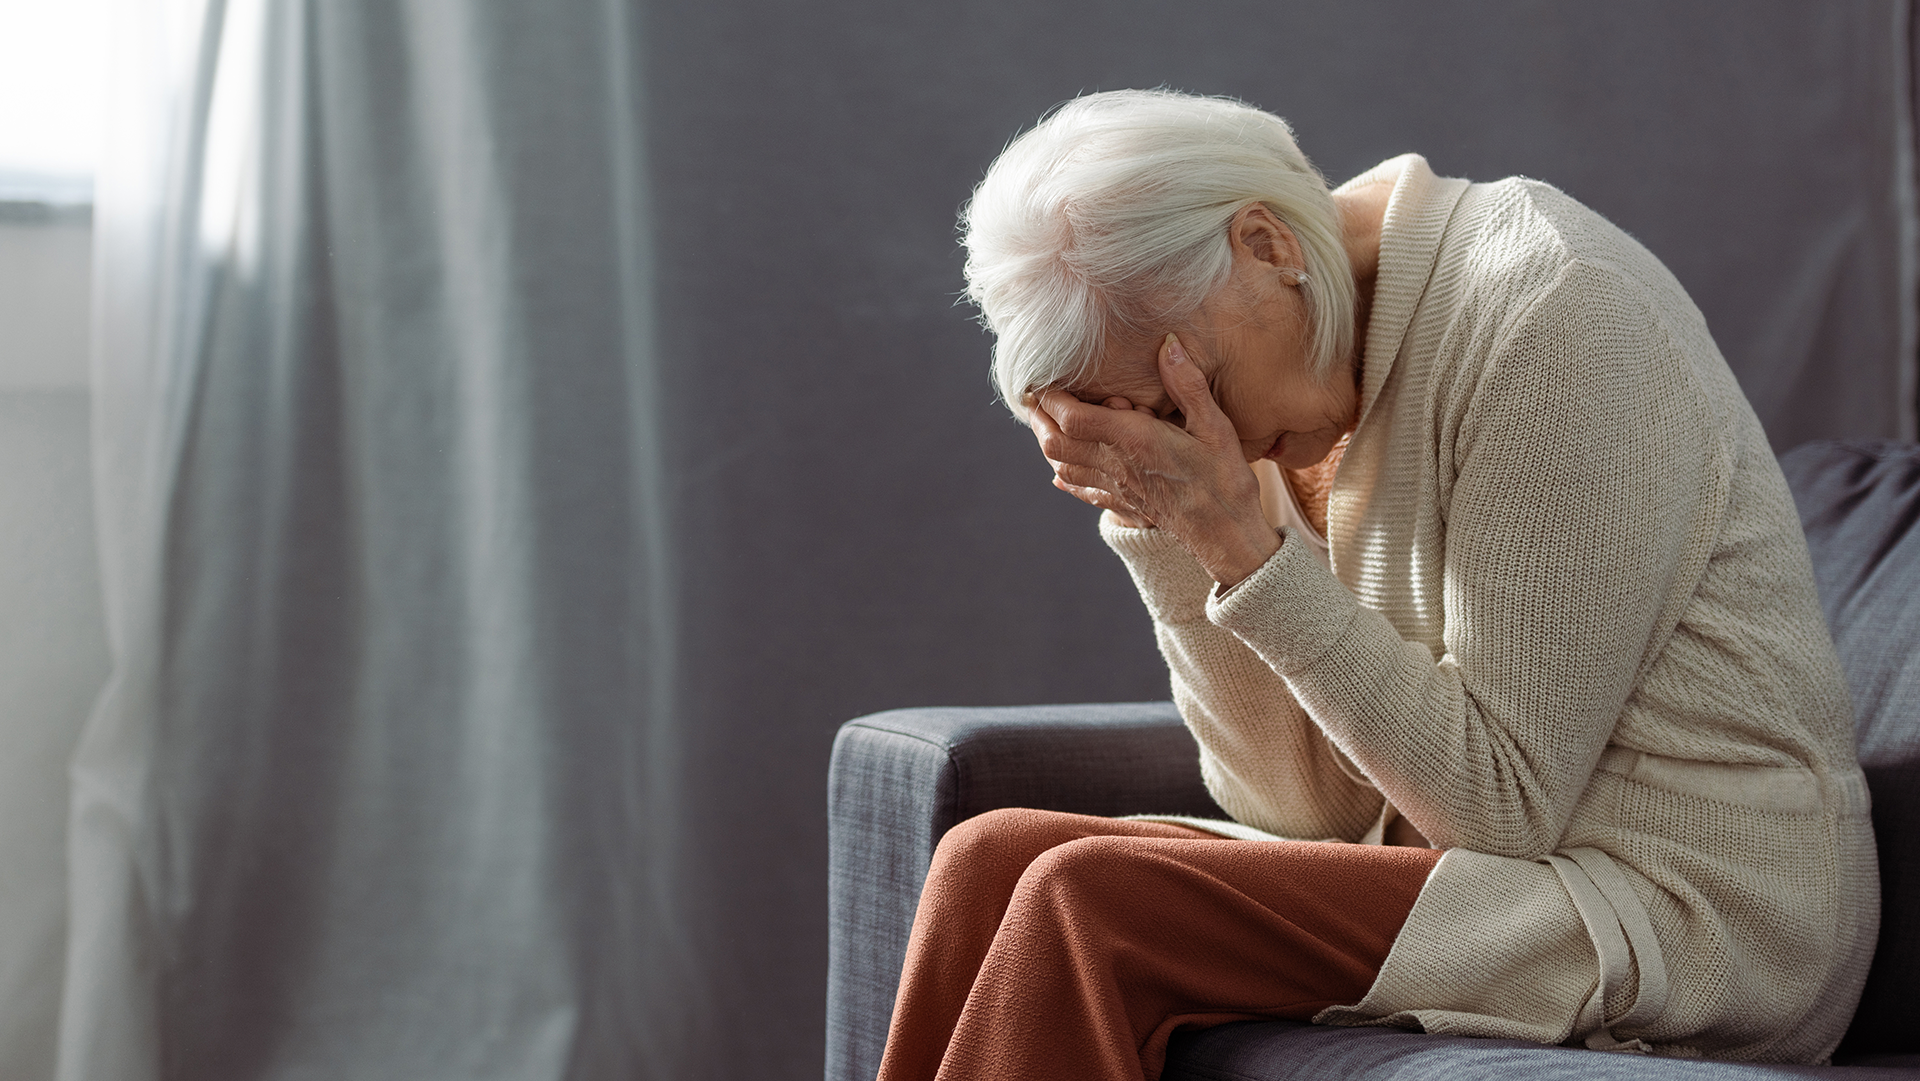 Seniorzy i zdrowie psychiczne — jak radzić sobie z depresją, stresem i innymi problemami emocjonalnymi